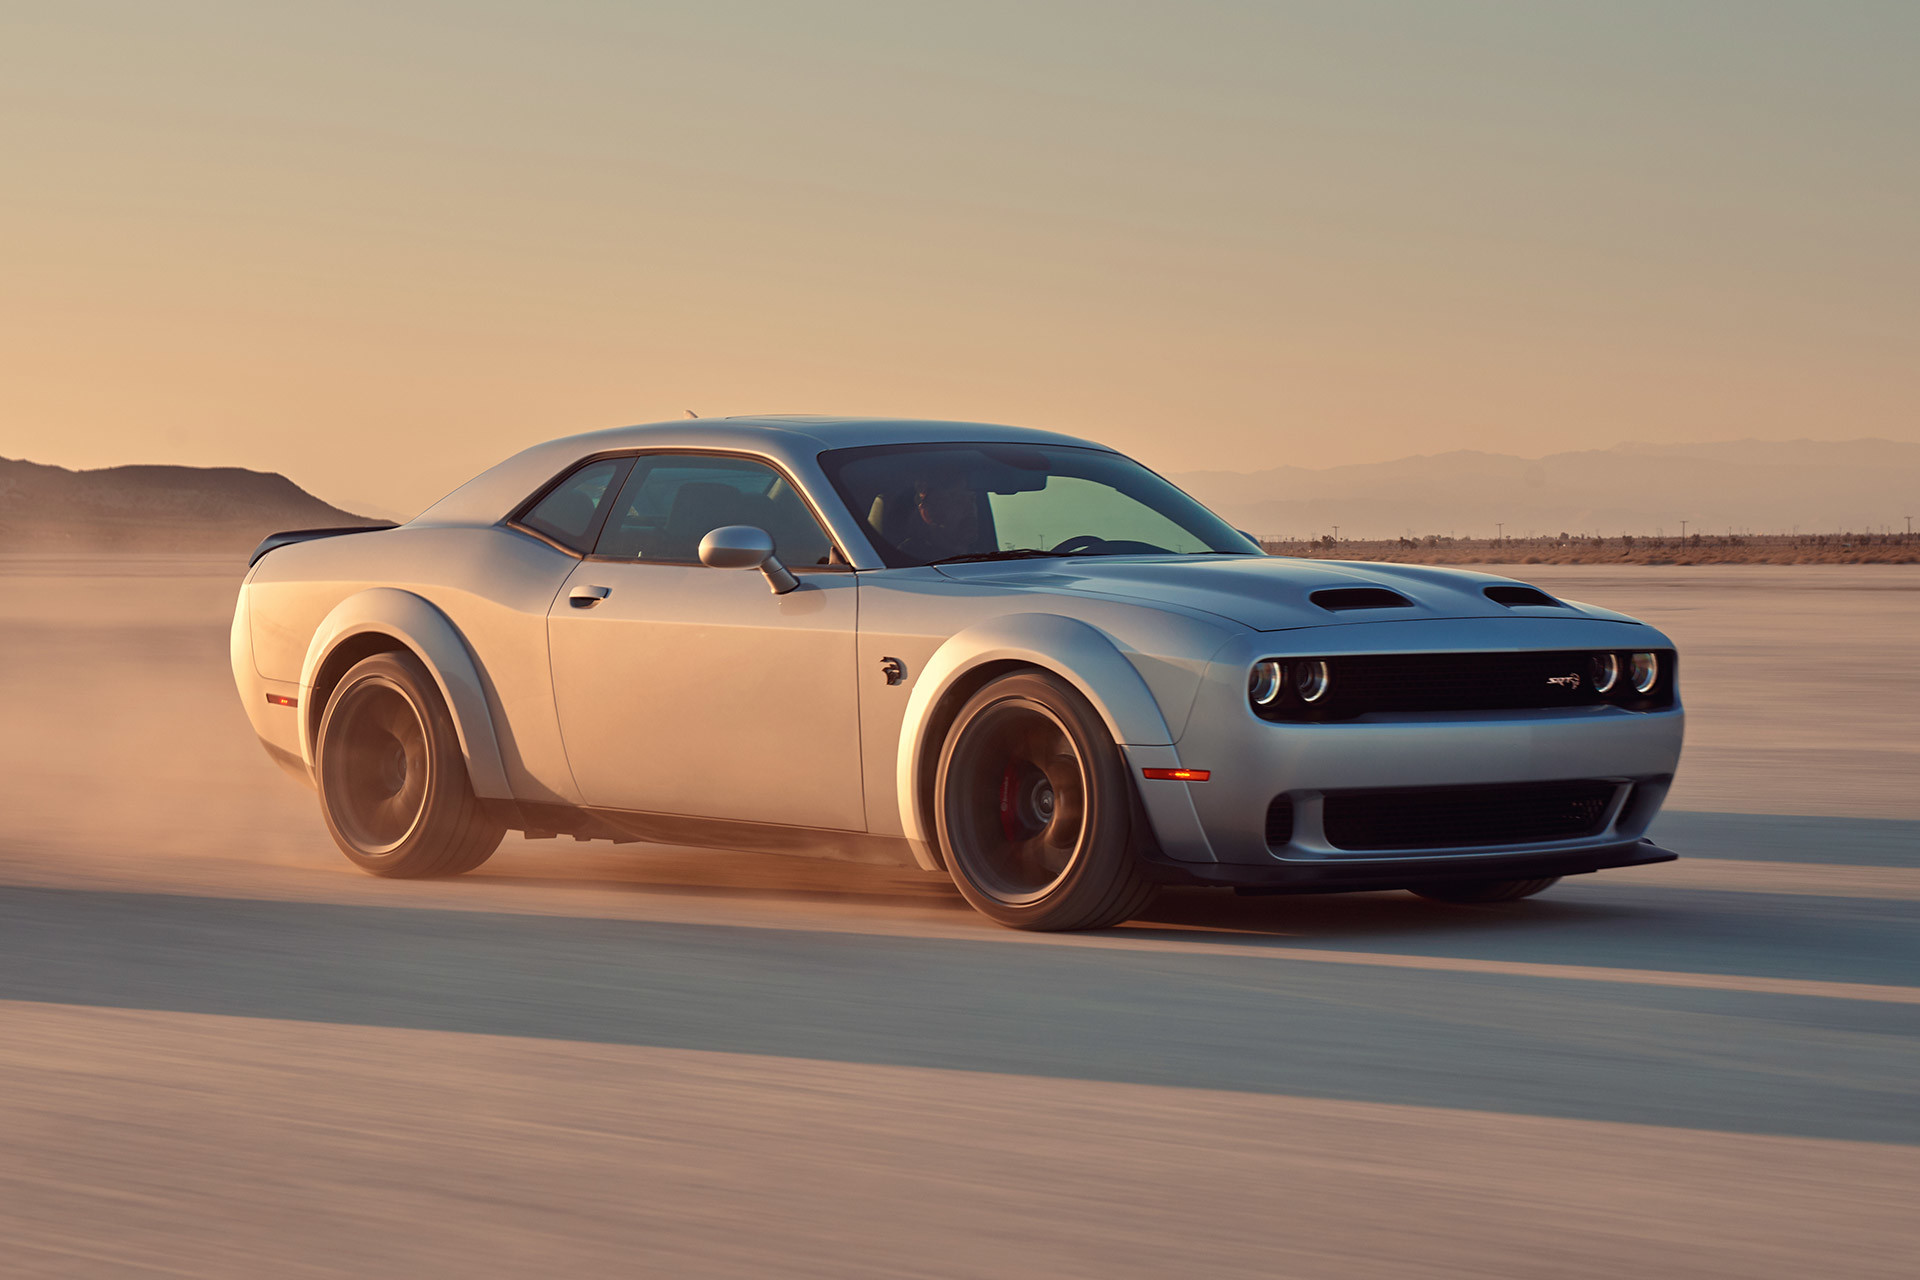 A silver 2022 Dodge Challenger being driven through a desert plain, kicking up dust.